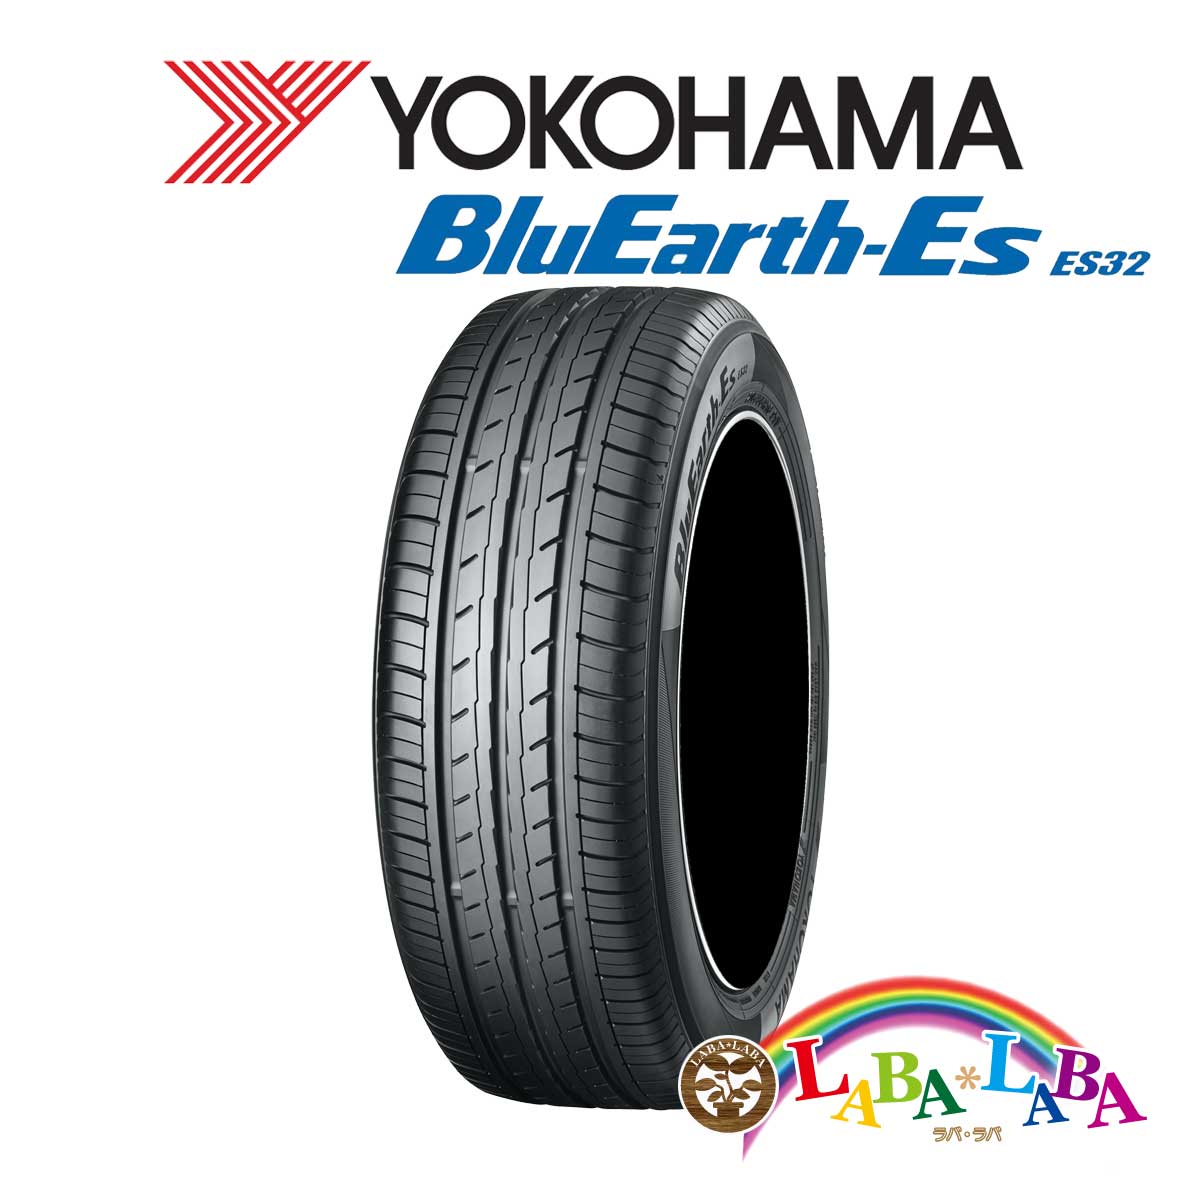 YOKOHAMA ヨコハマ BluEarth-Es ブルーアース ES32 195/55R16 87V サマータイヤ 4本セット  ラバラバ 